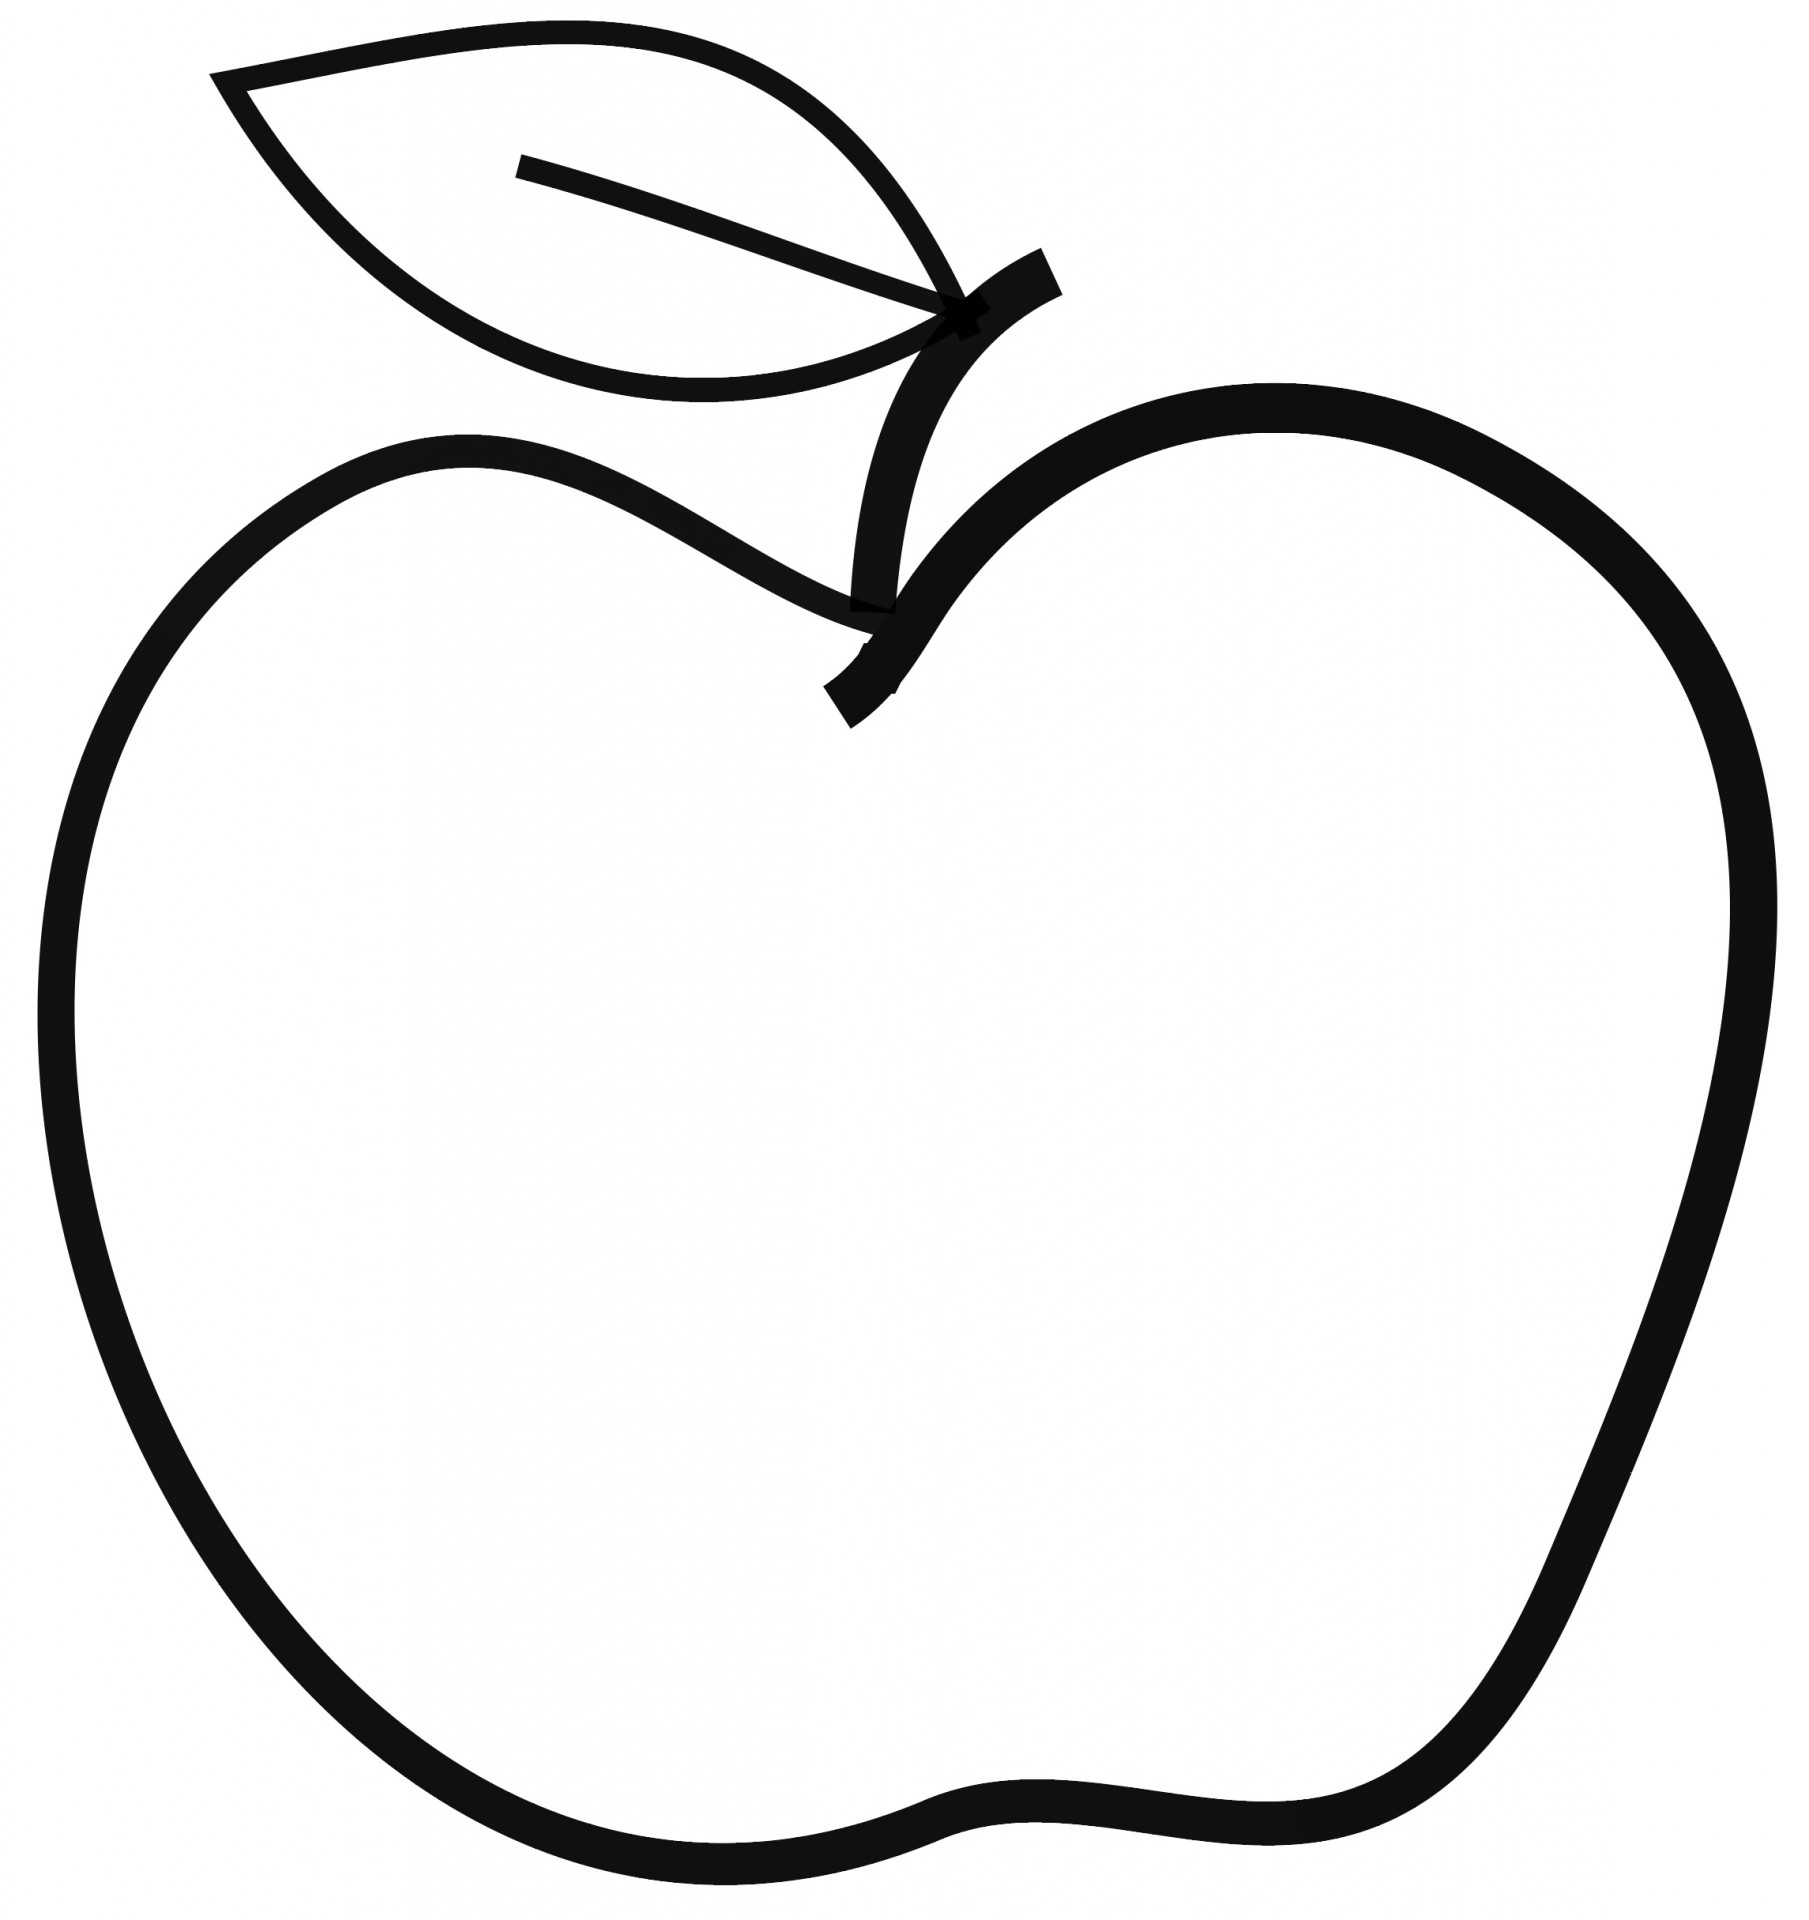 Teacher Apple Clip Art